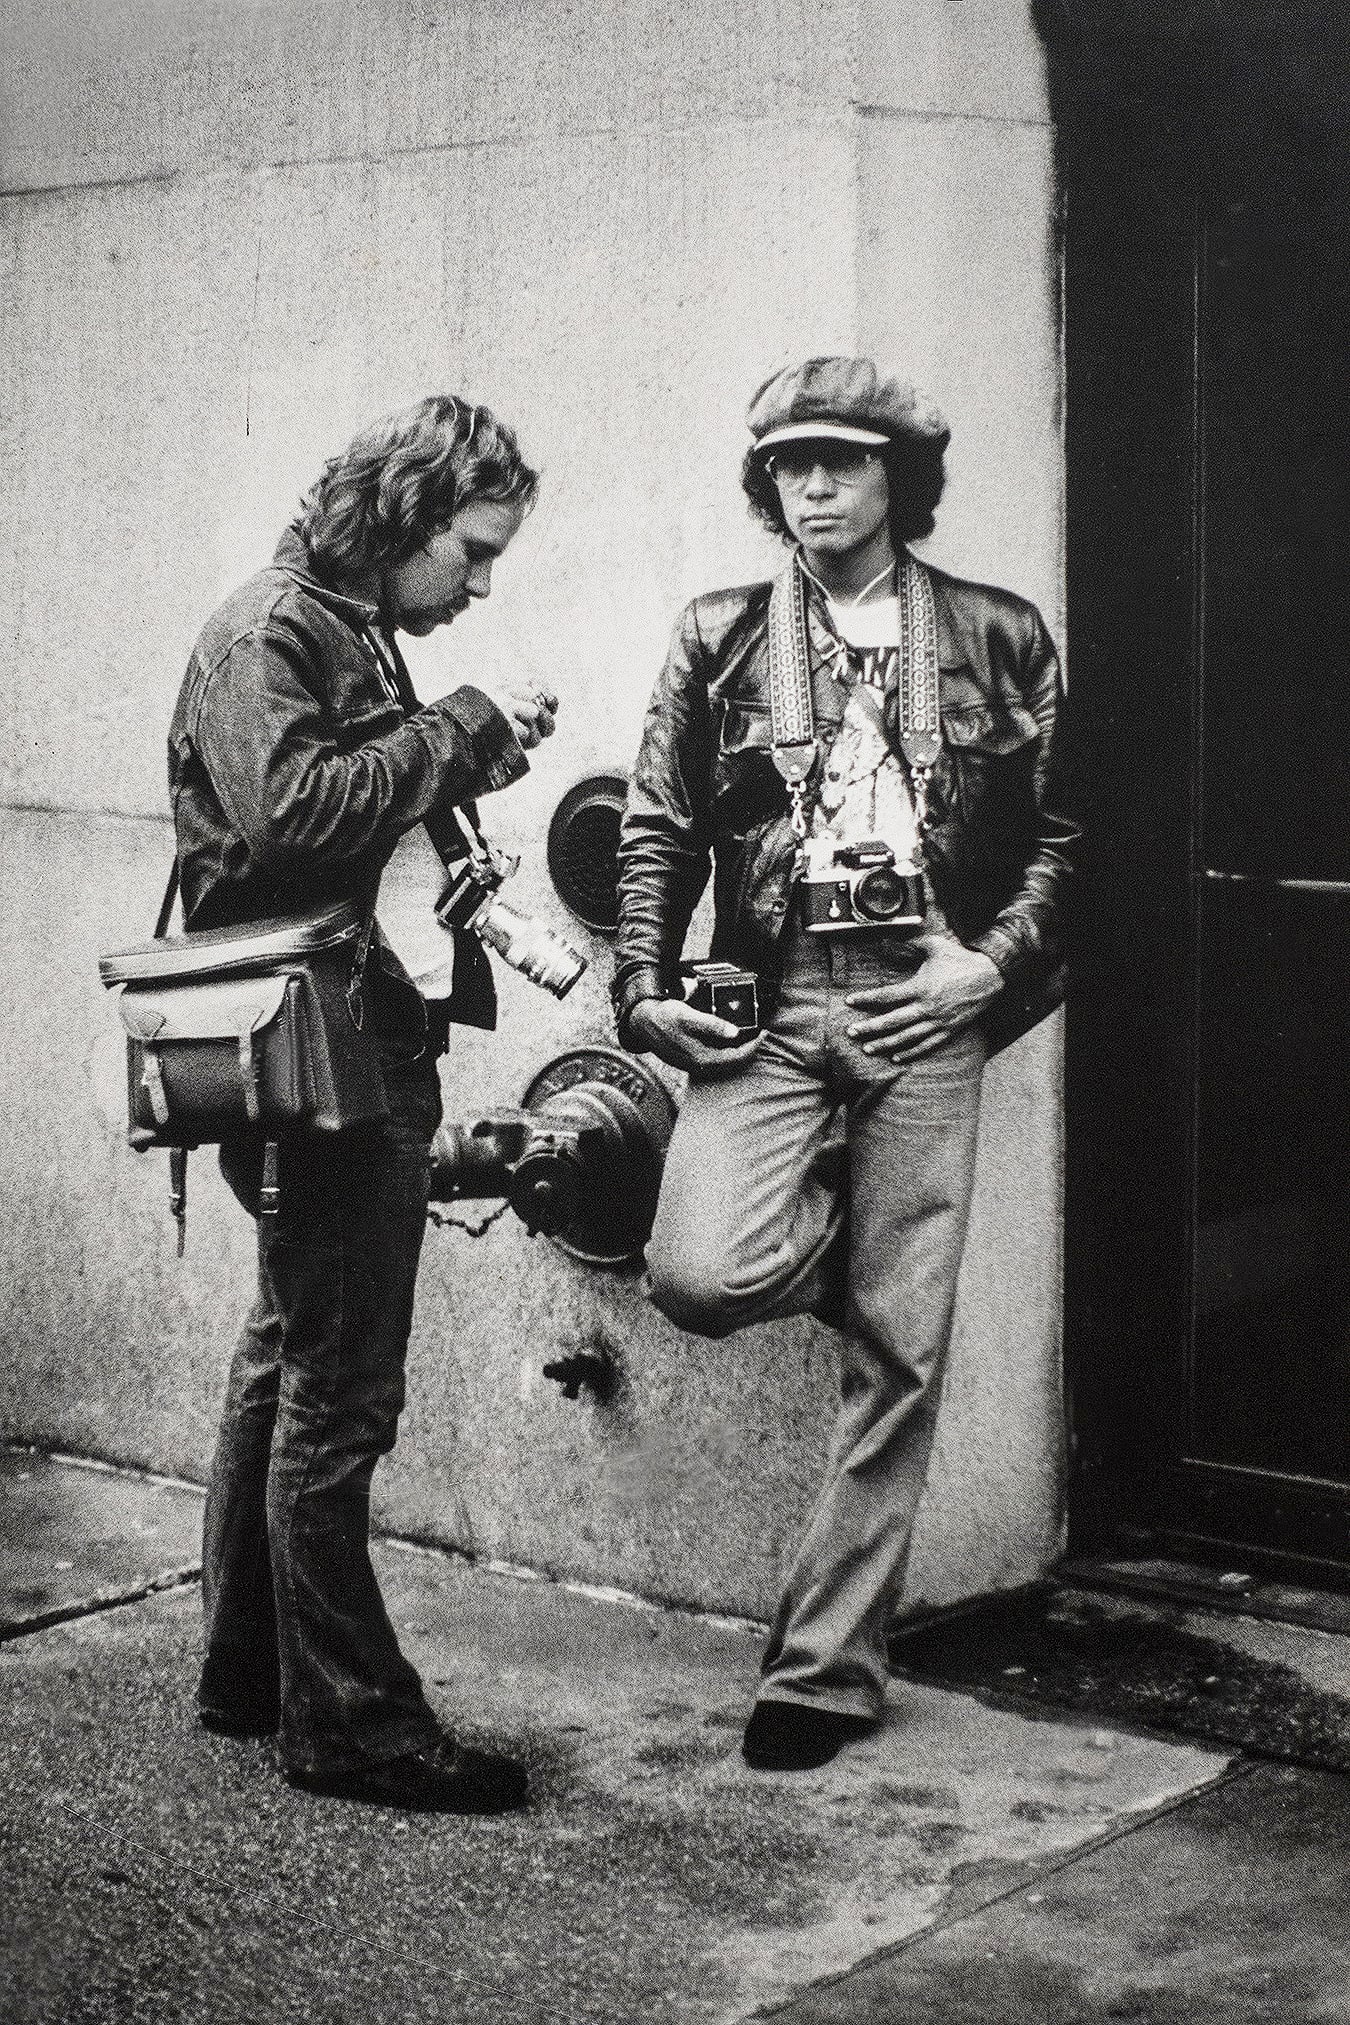 Tony Ward in New York City 1975